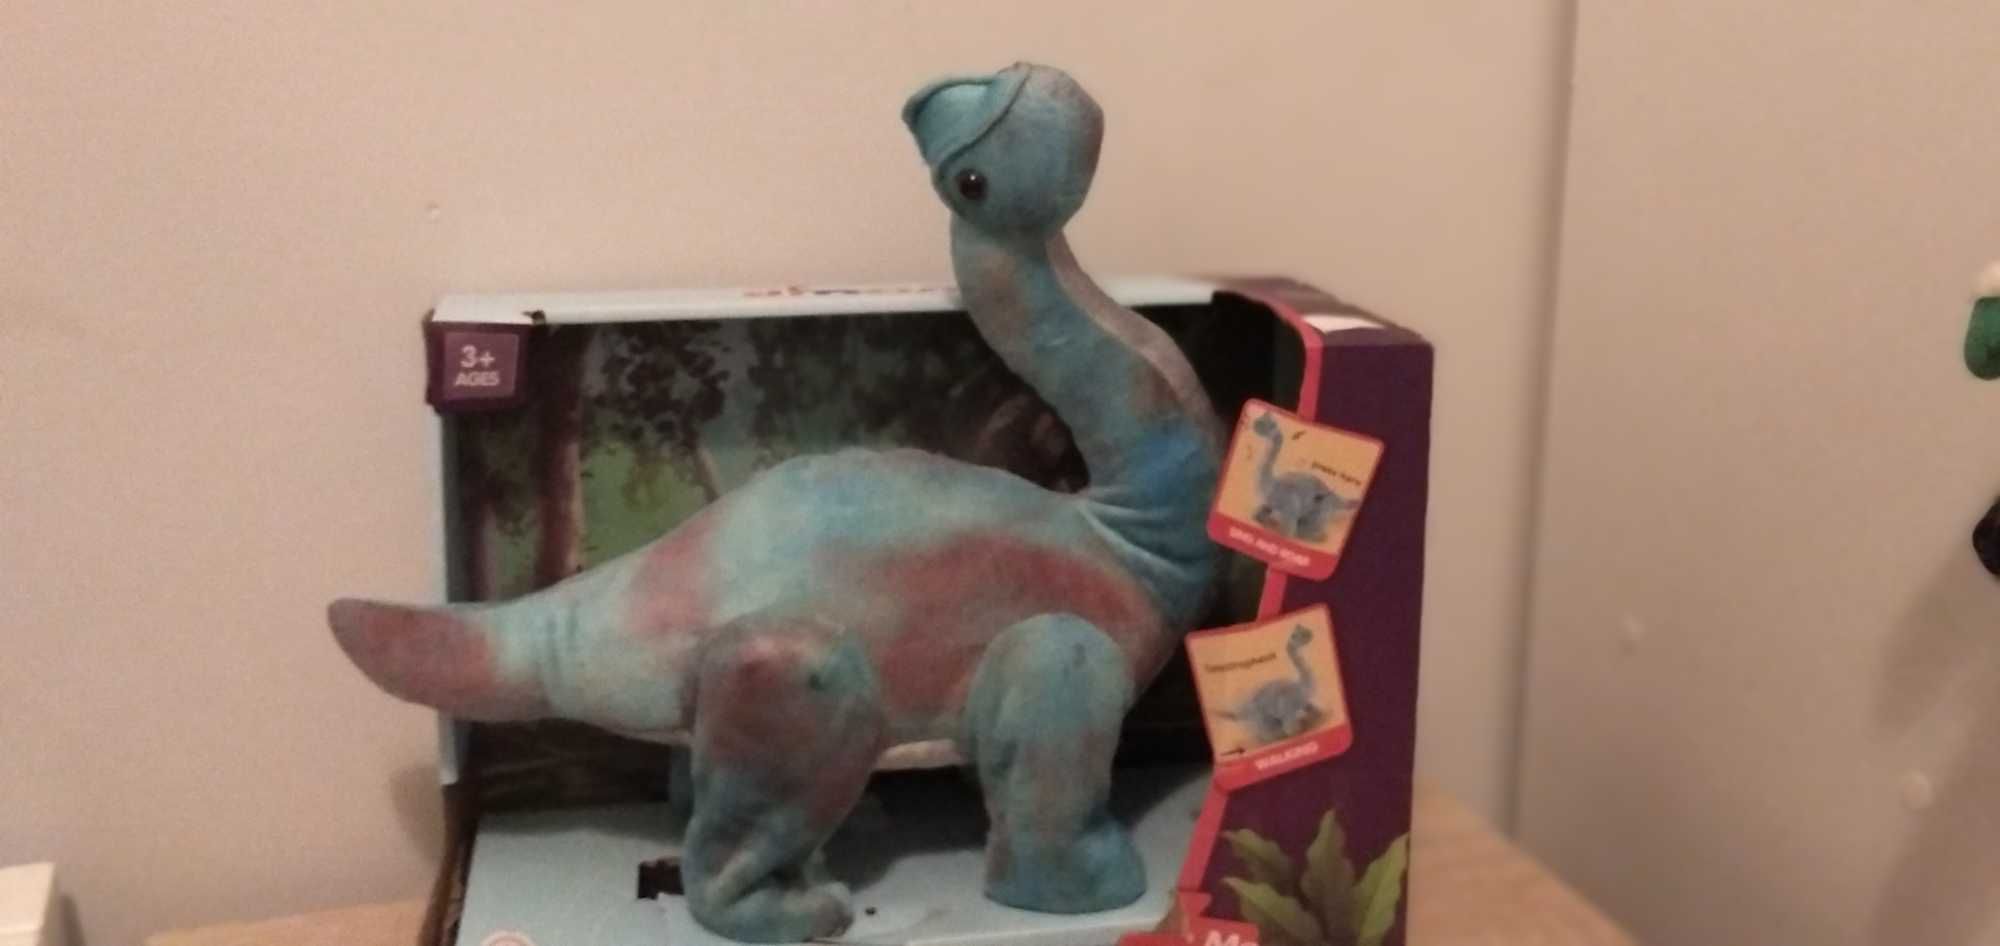 Zabawka chodzący i grajacy dinozaur